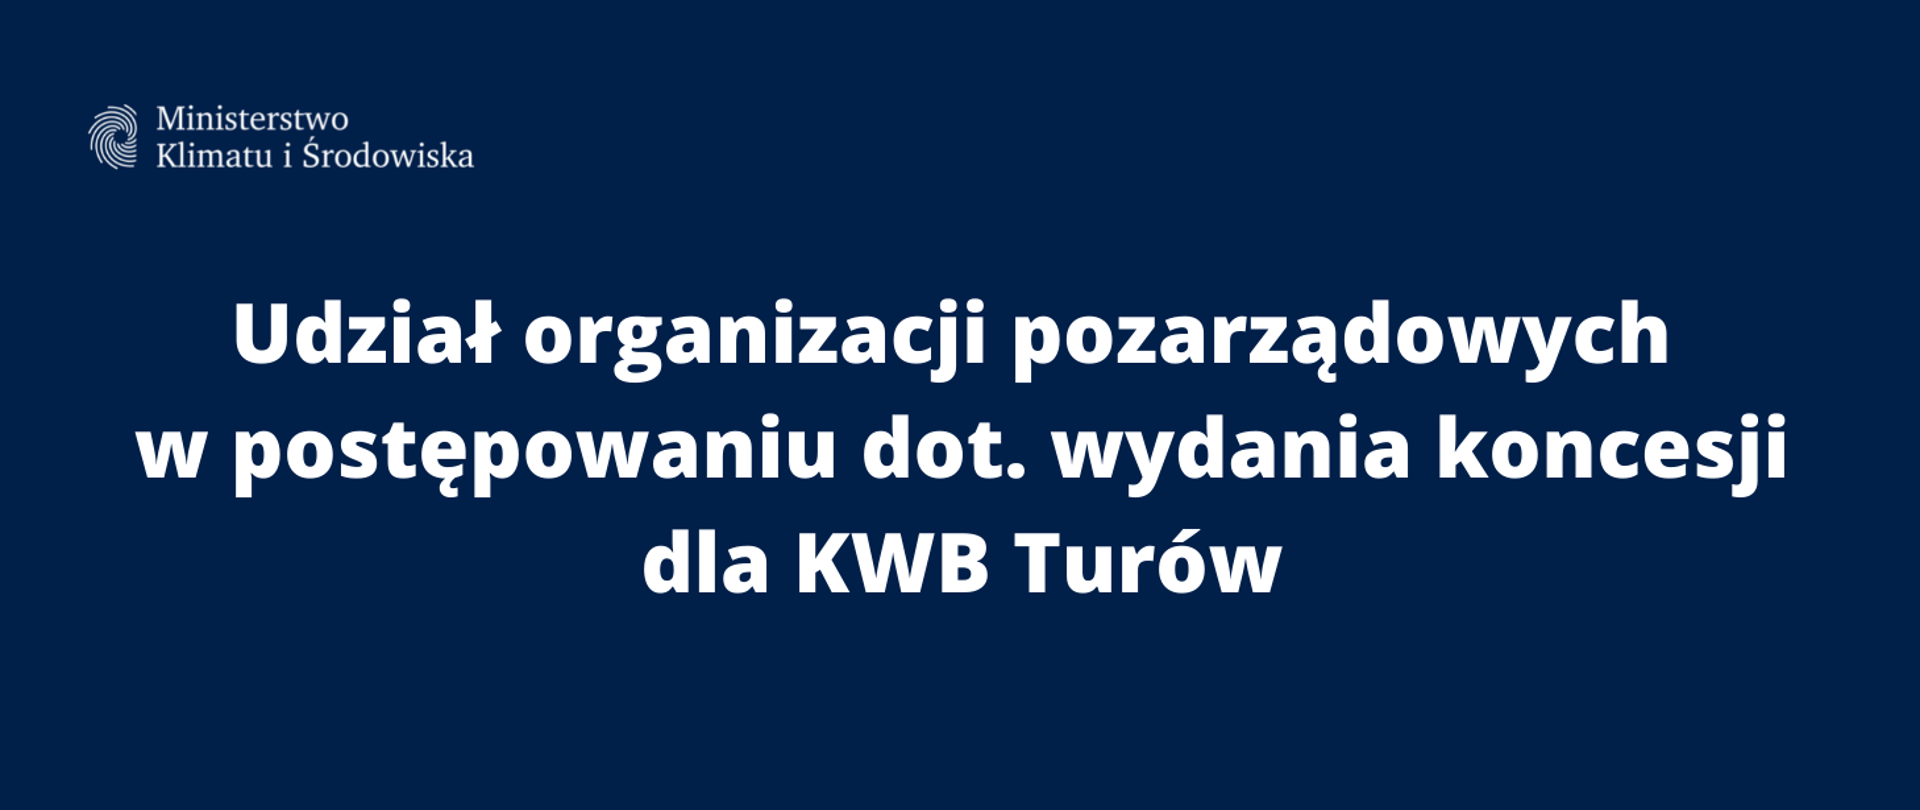 Udział organizacji pozarządowych w postępowaniu dot. wydania koncesji dla KWB Turów